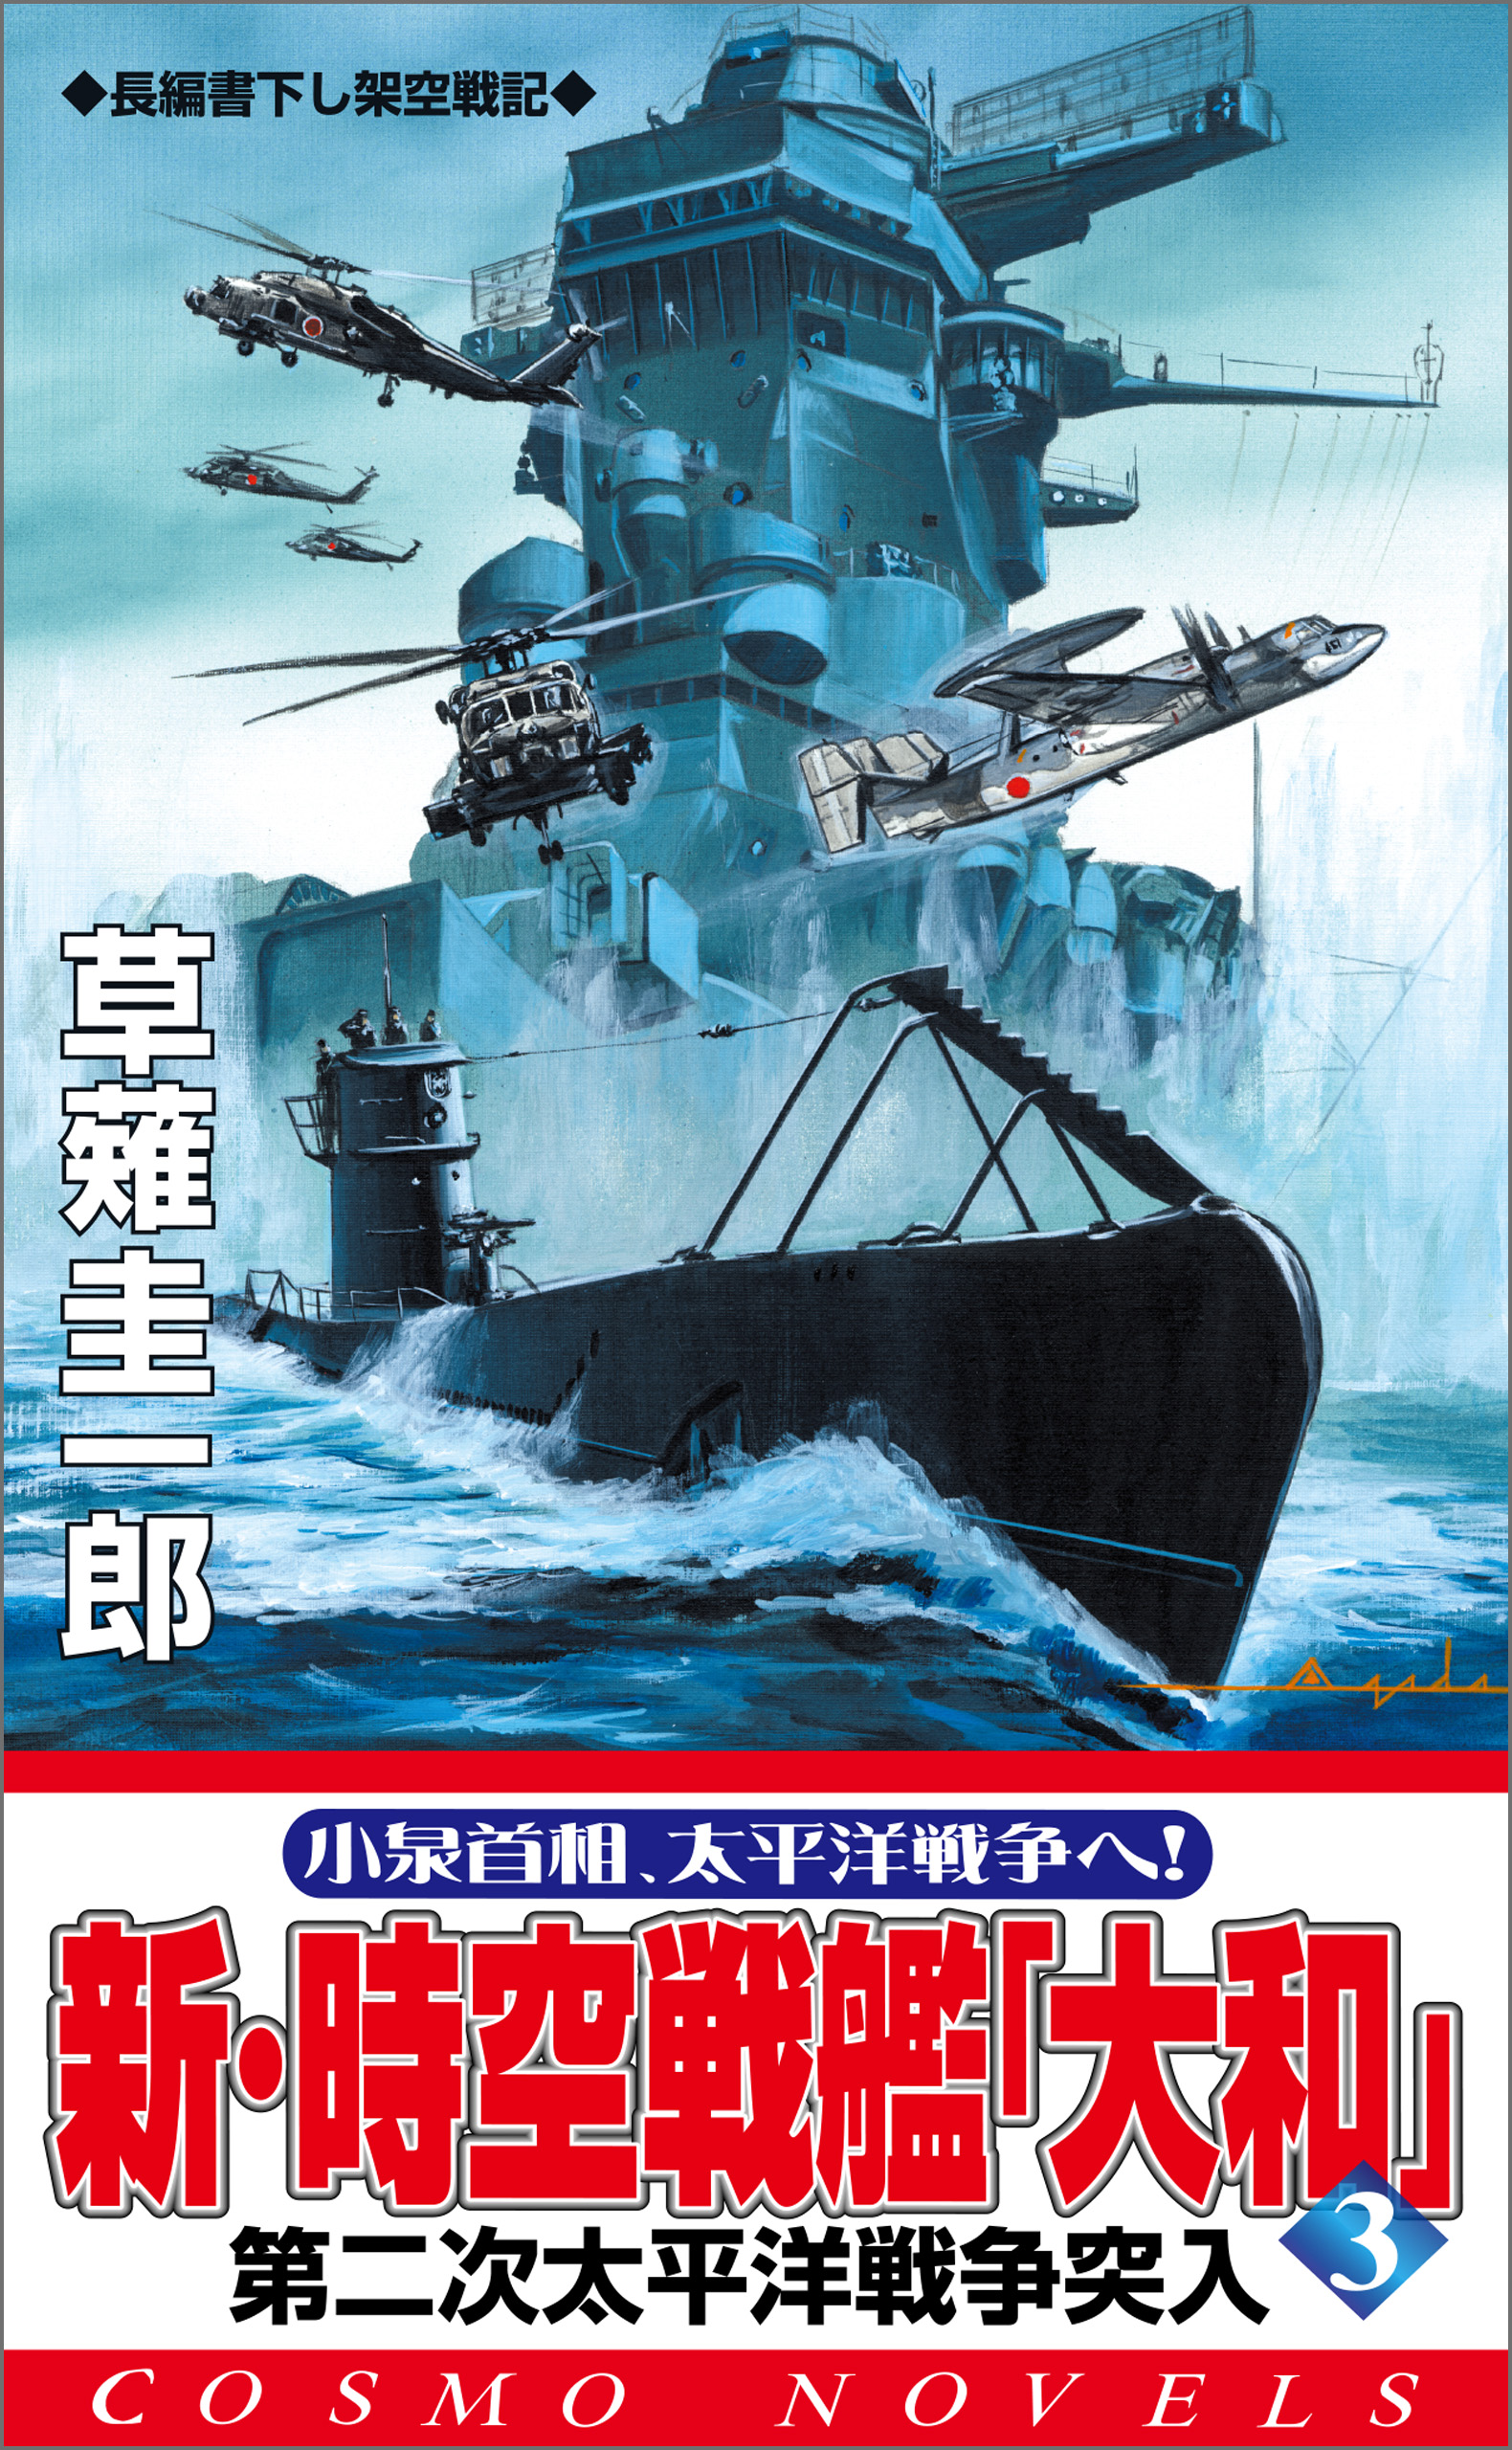 新・時空戦艦『大和』〈3〉第二次太平洋戦争突入 - 草薙圭一郎 - 漫画 ...